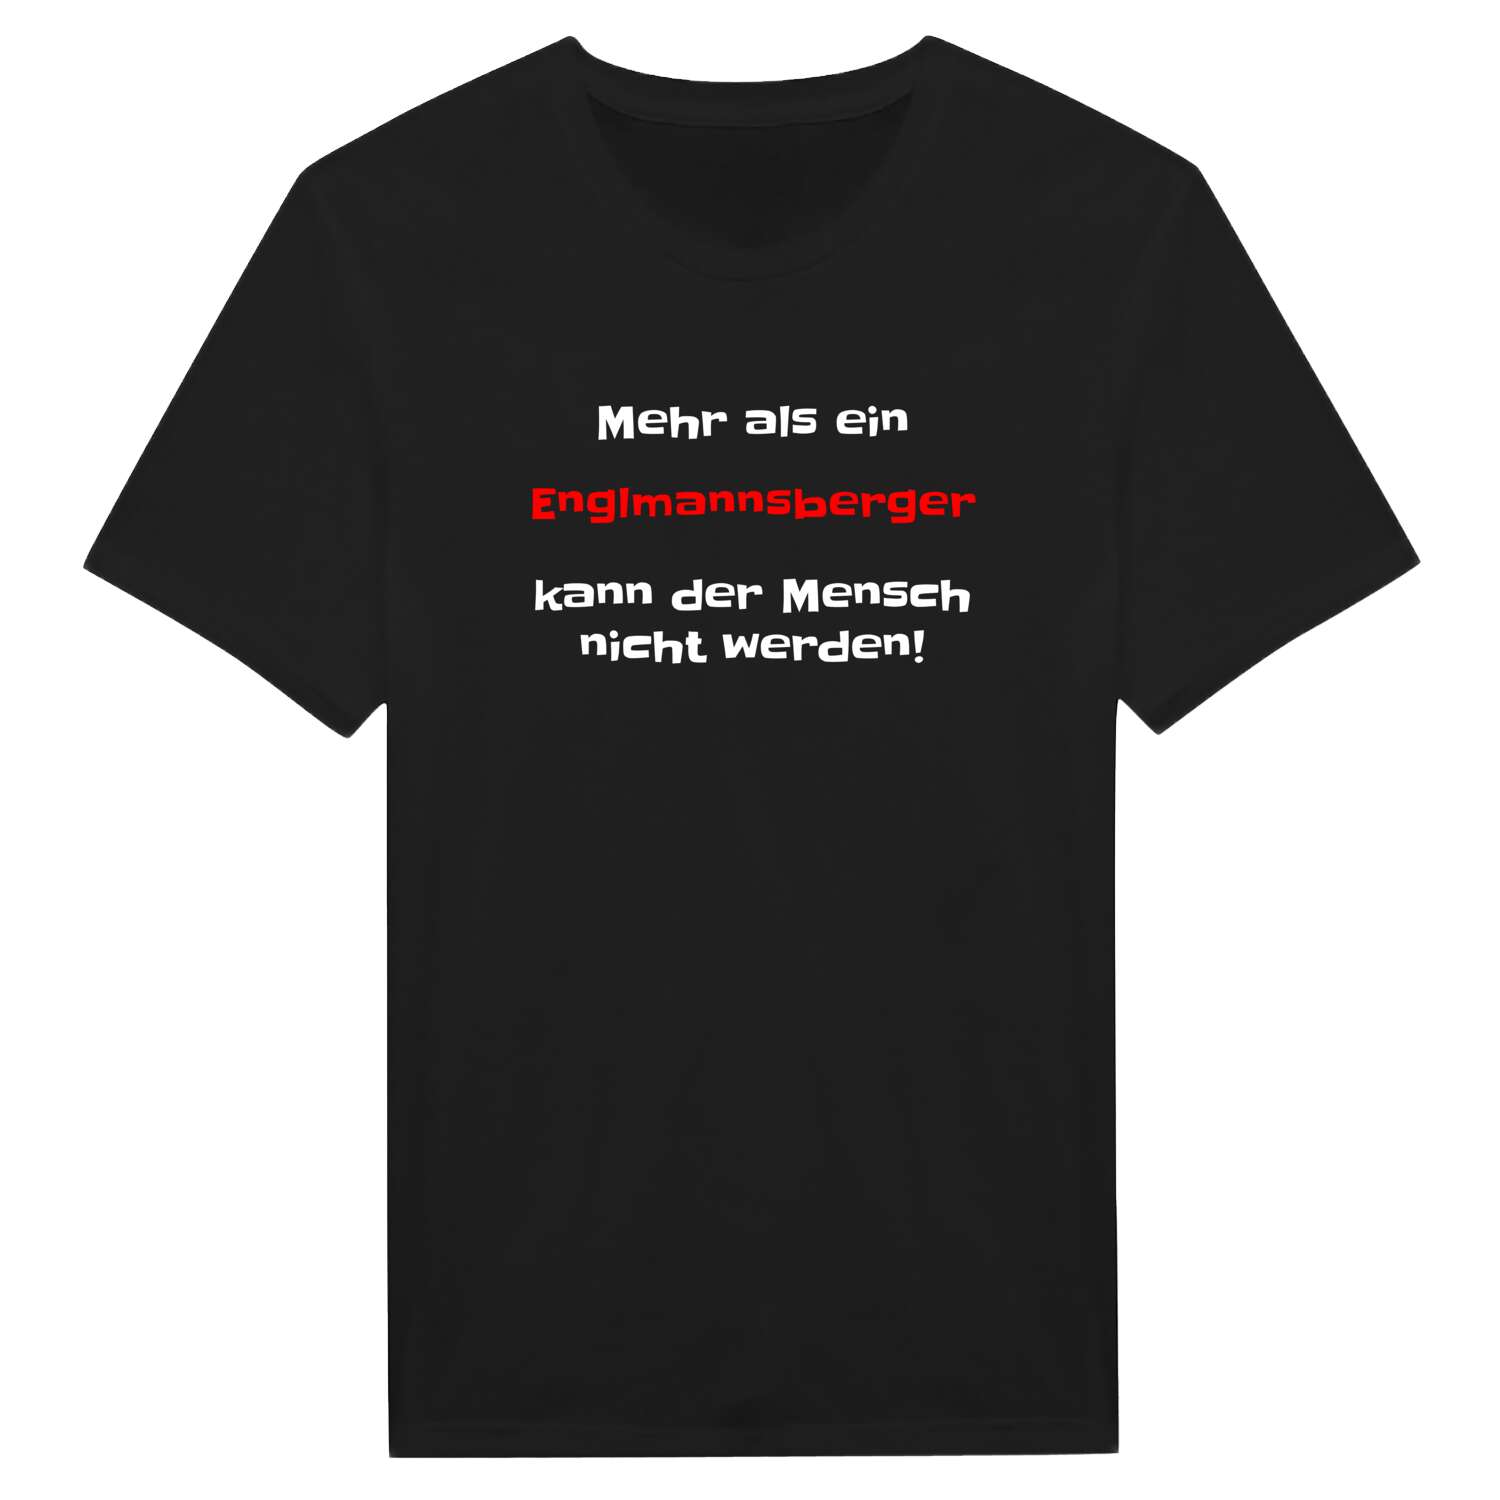 Englmannsberg T-Shirt »Mehr als ein«